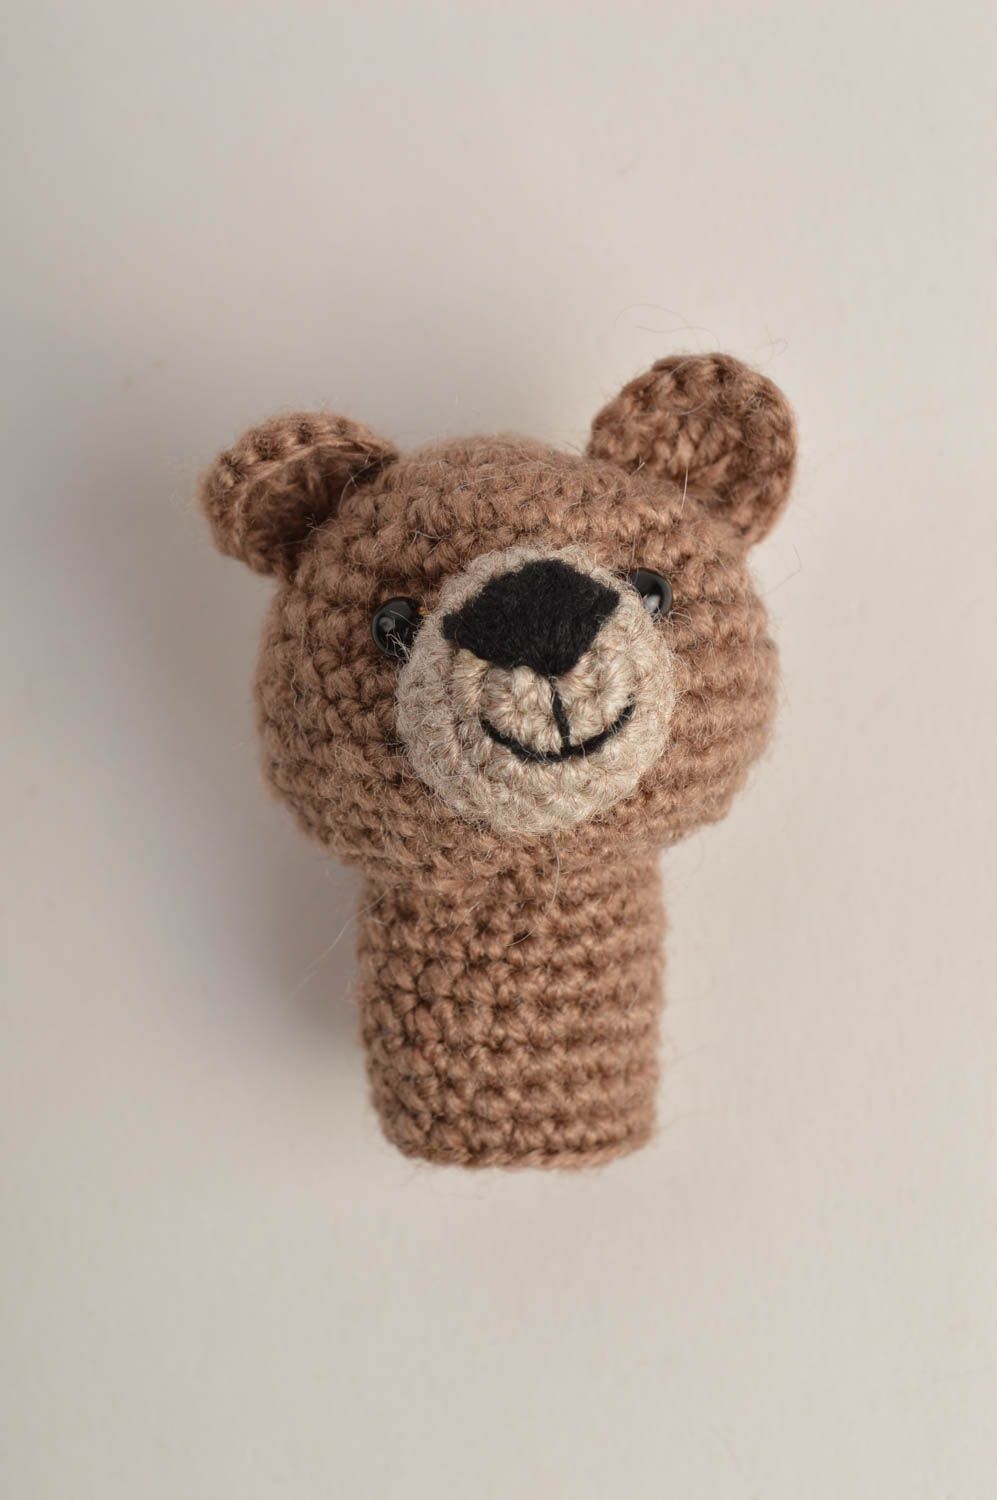 Мягкая игрушка подарок ребенку хенд мейд пальчиковая игрушка крючком медведь фото 3